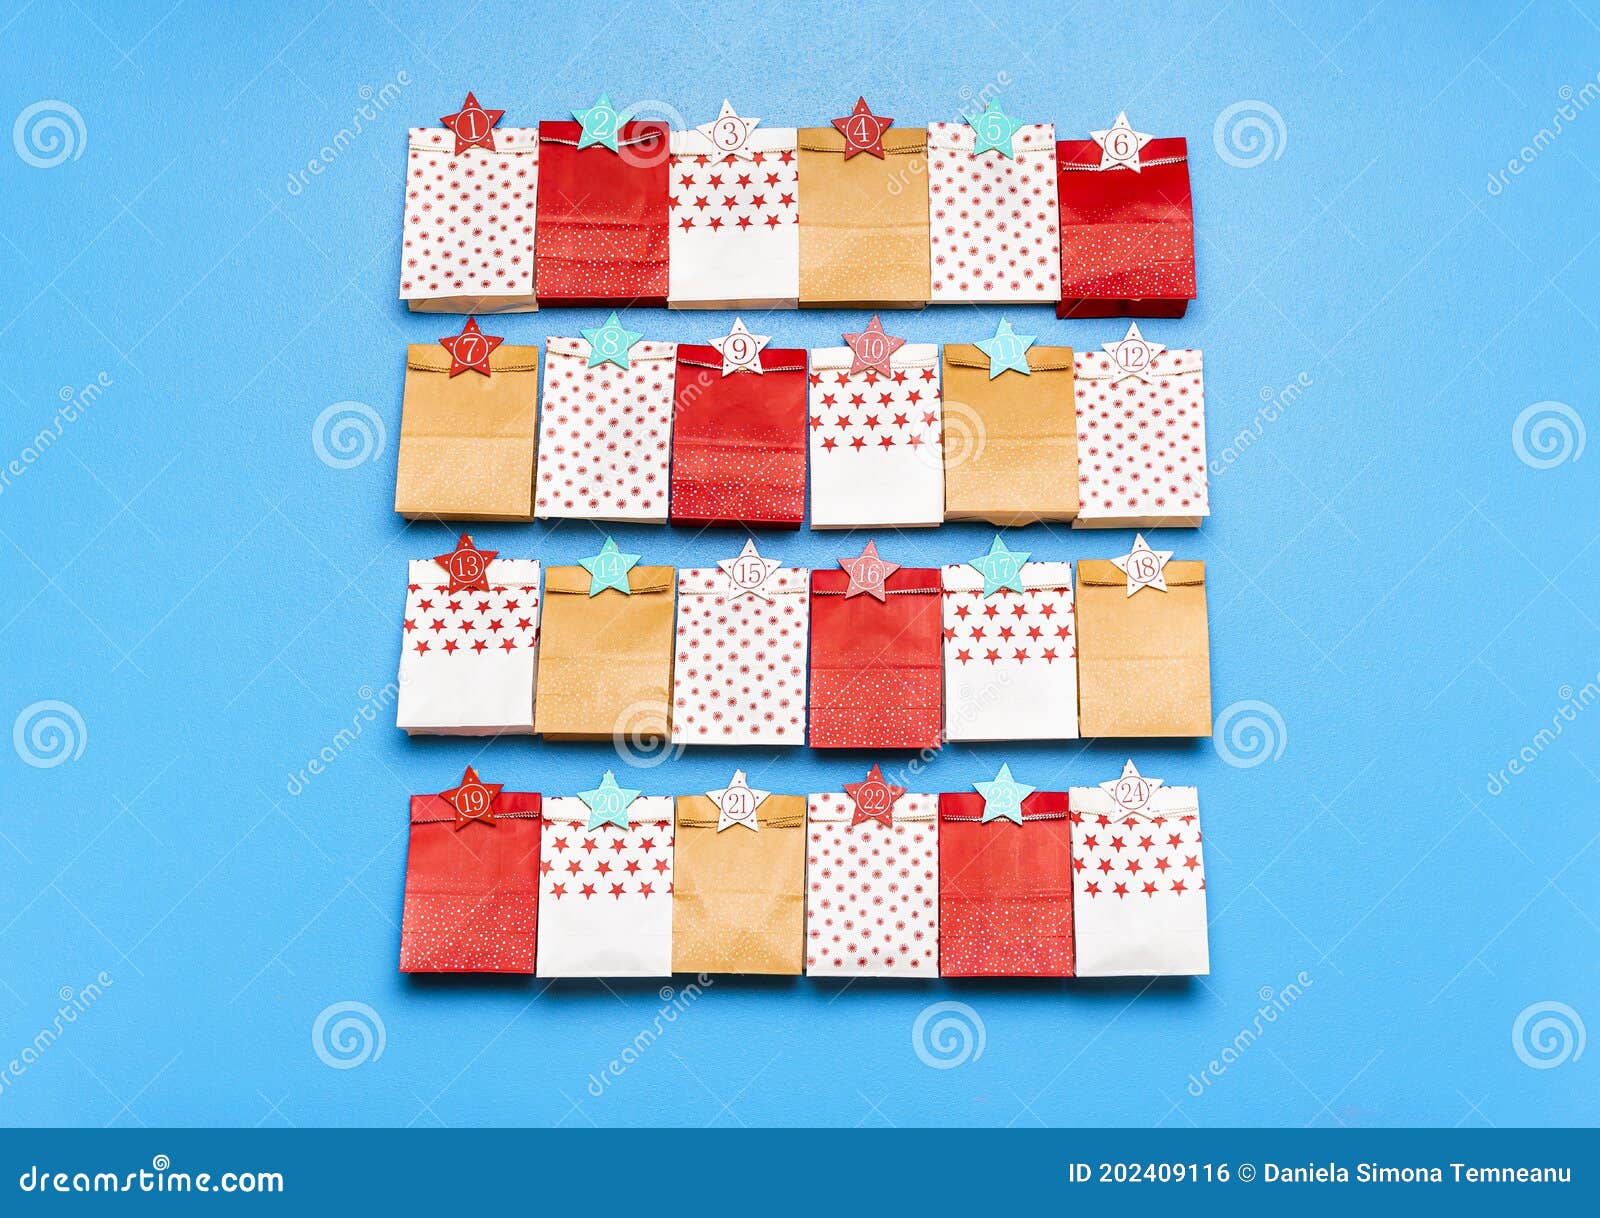 embalaje de regalo bocadillos bolsa de comida pan 24 etiquetas adhesivas bolsa de papel navideña Viilich Bolsa de calendario de Adviento de 24 unidades suministros para fiestas de Navidad